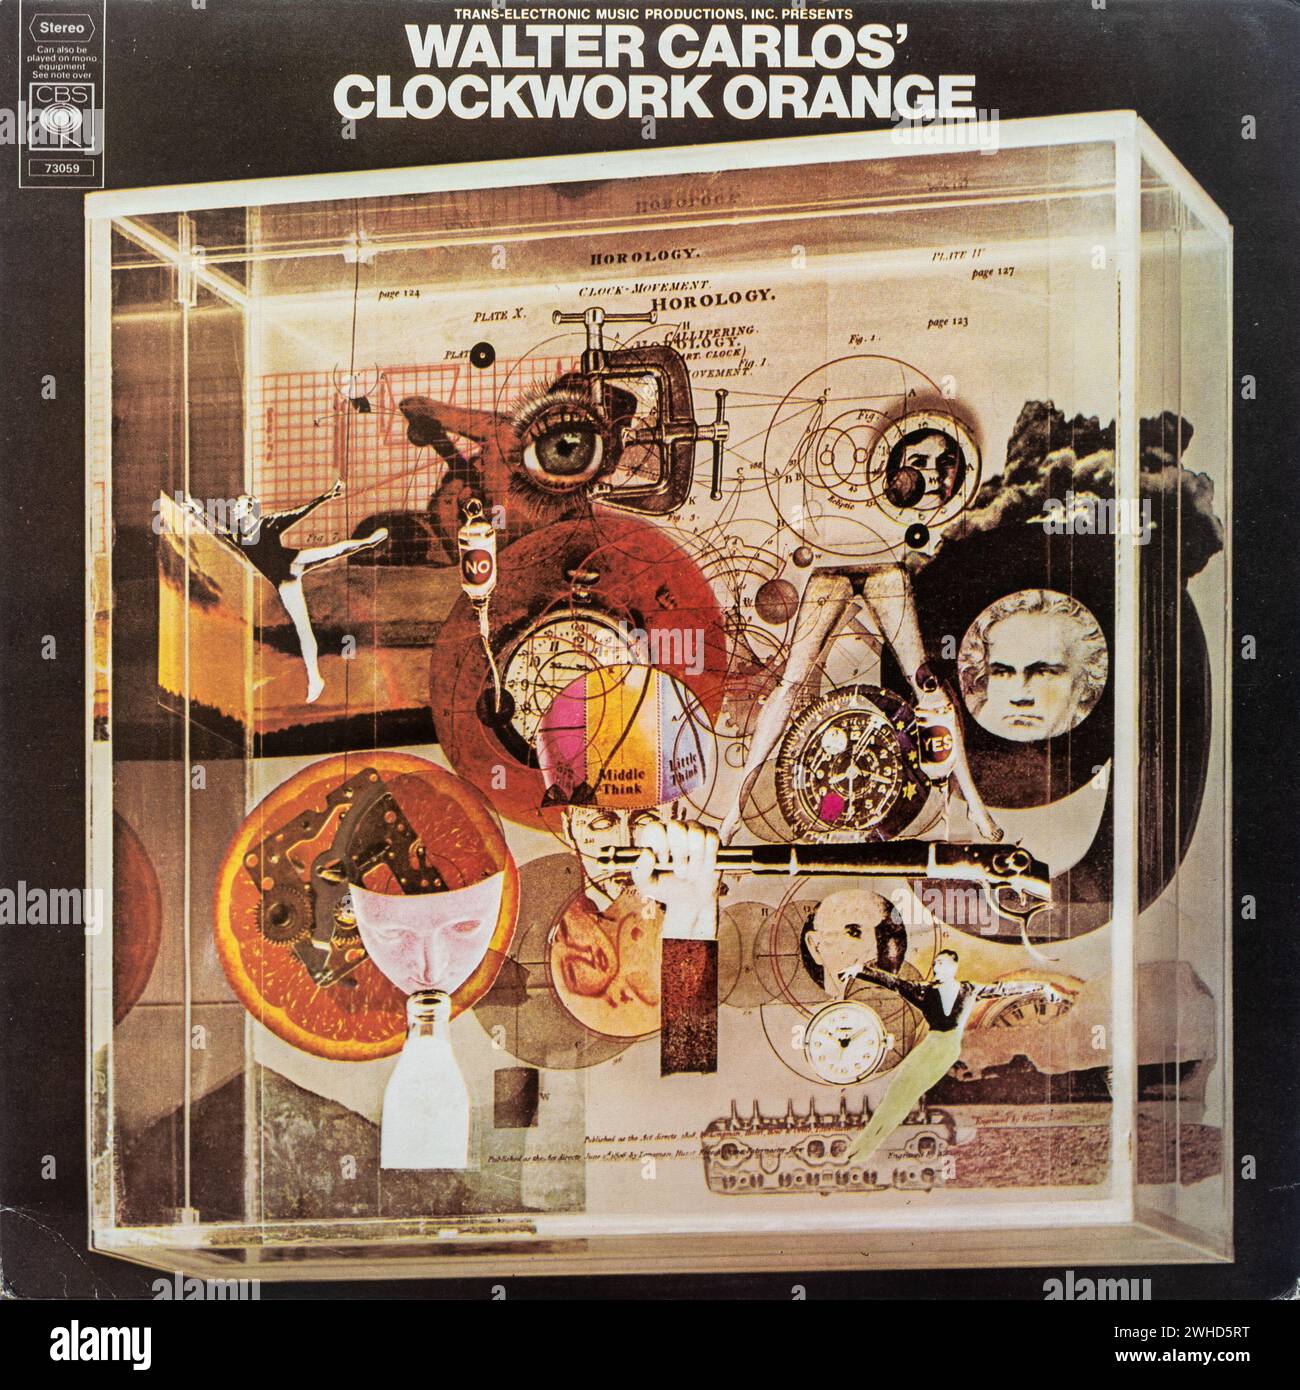 Walter Carlos Clockwork Orange vinyl LP record album cover (wendy carlos) Stock Photo